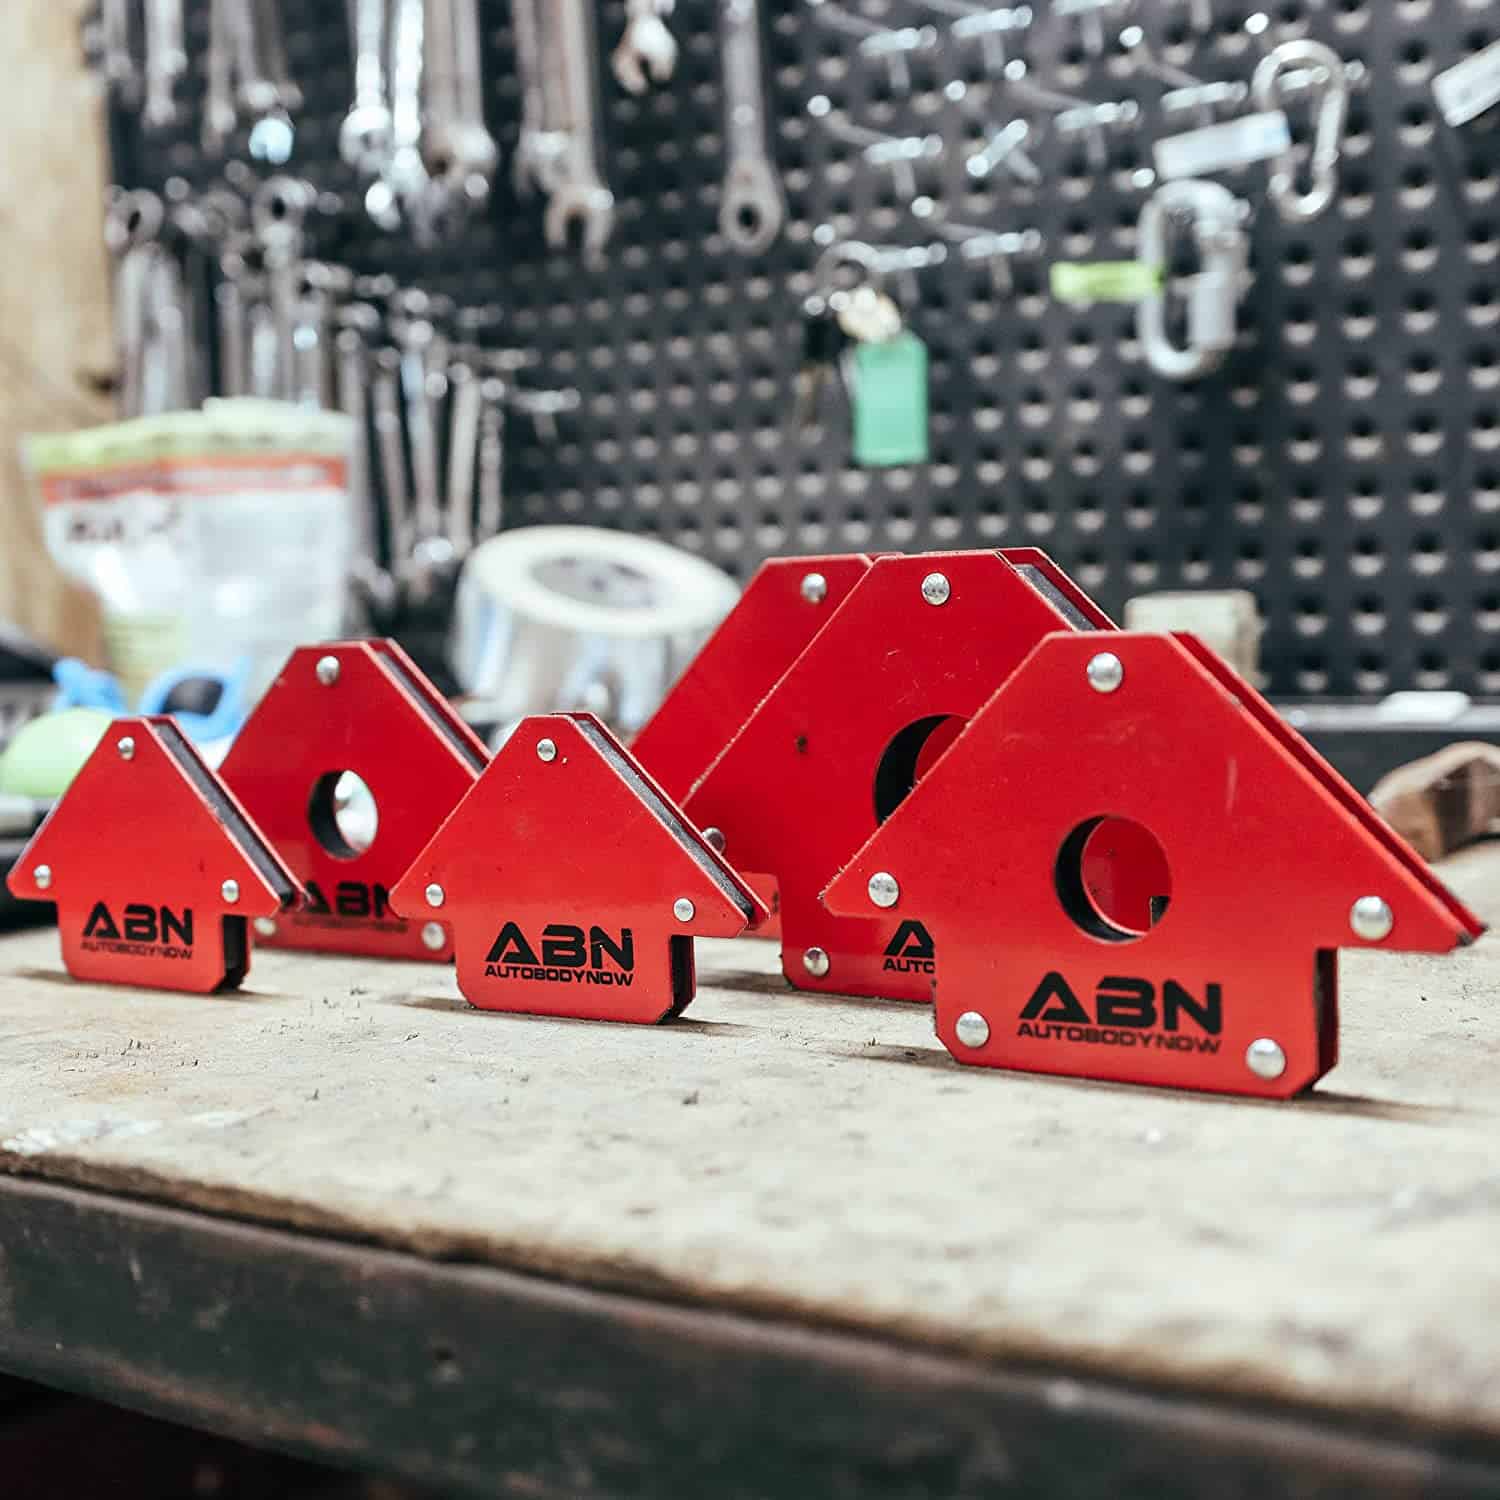 Best arrow-shaped welding magnet- ABN Arrow Welding Magnet set on workbench